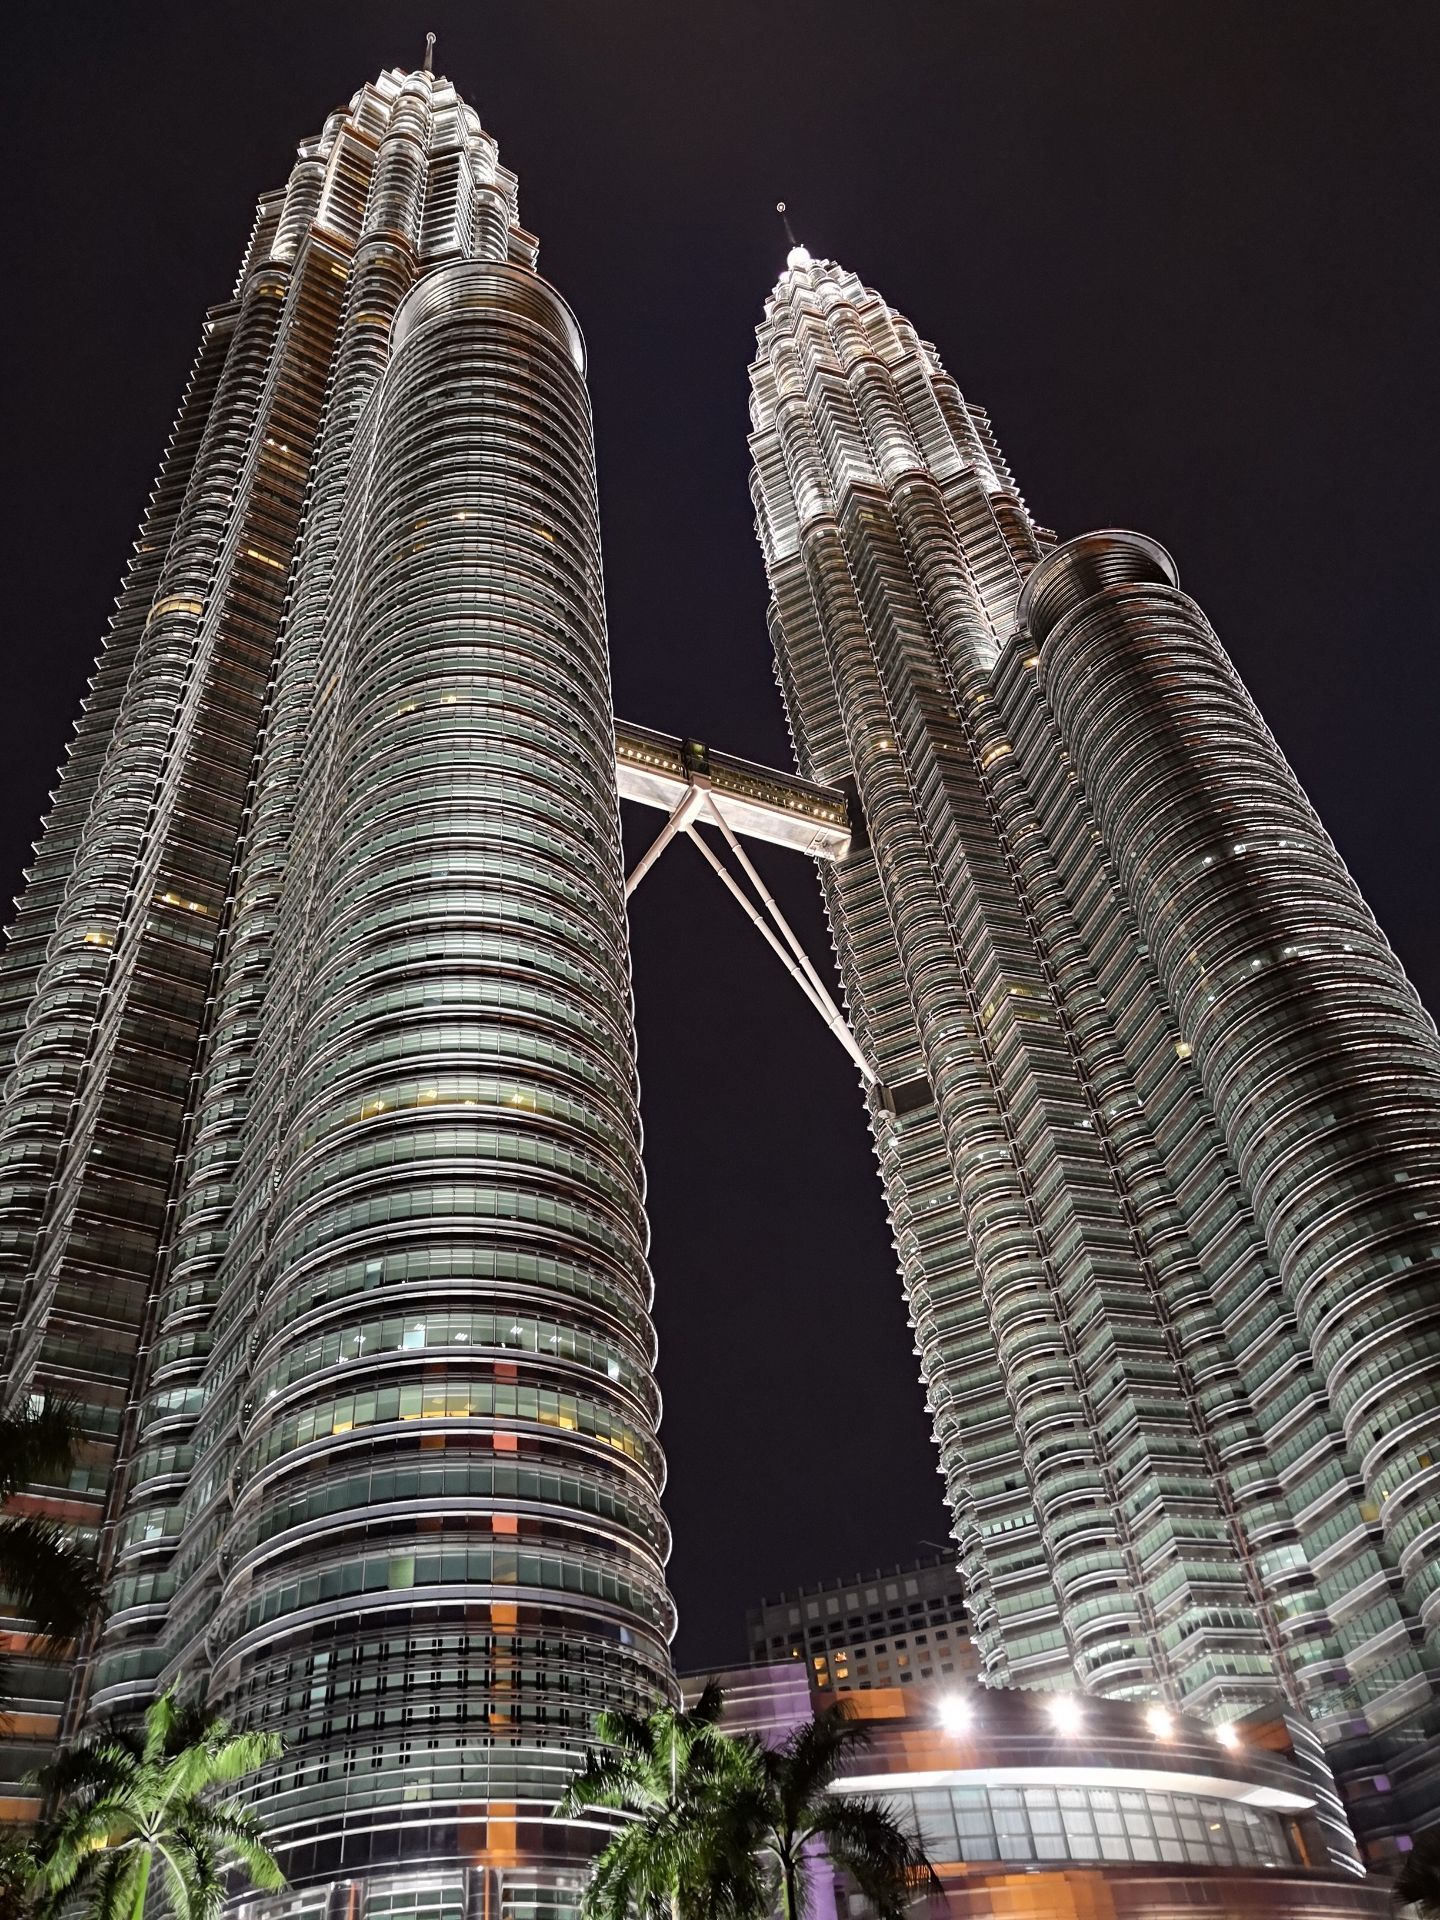 【携程攻略】吉隆坡双子塔景点,石油公司的双子塔建筑，可上84层塔顶，一览吉隆坡景色。其中的商场物…